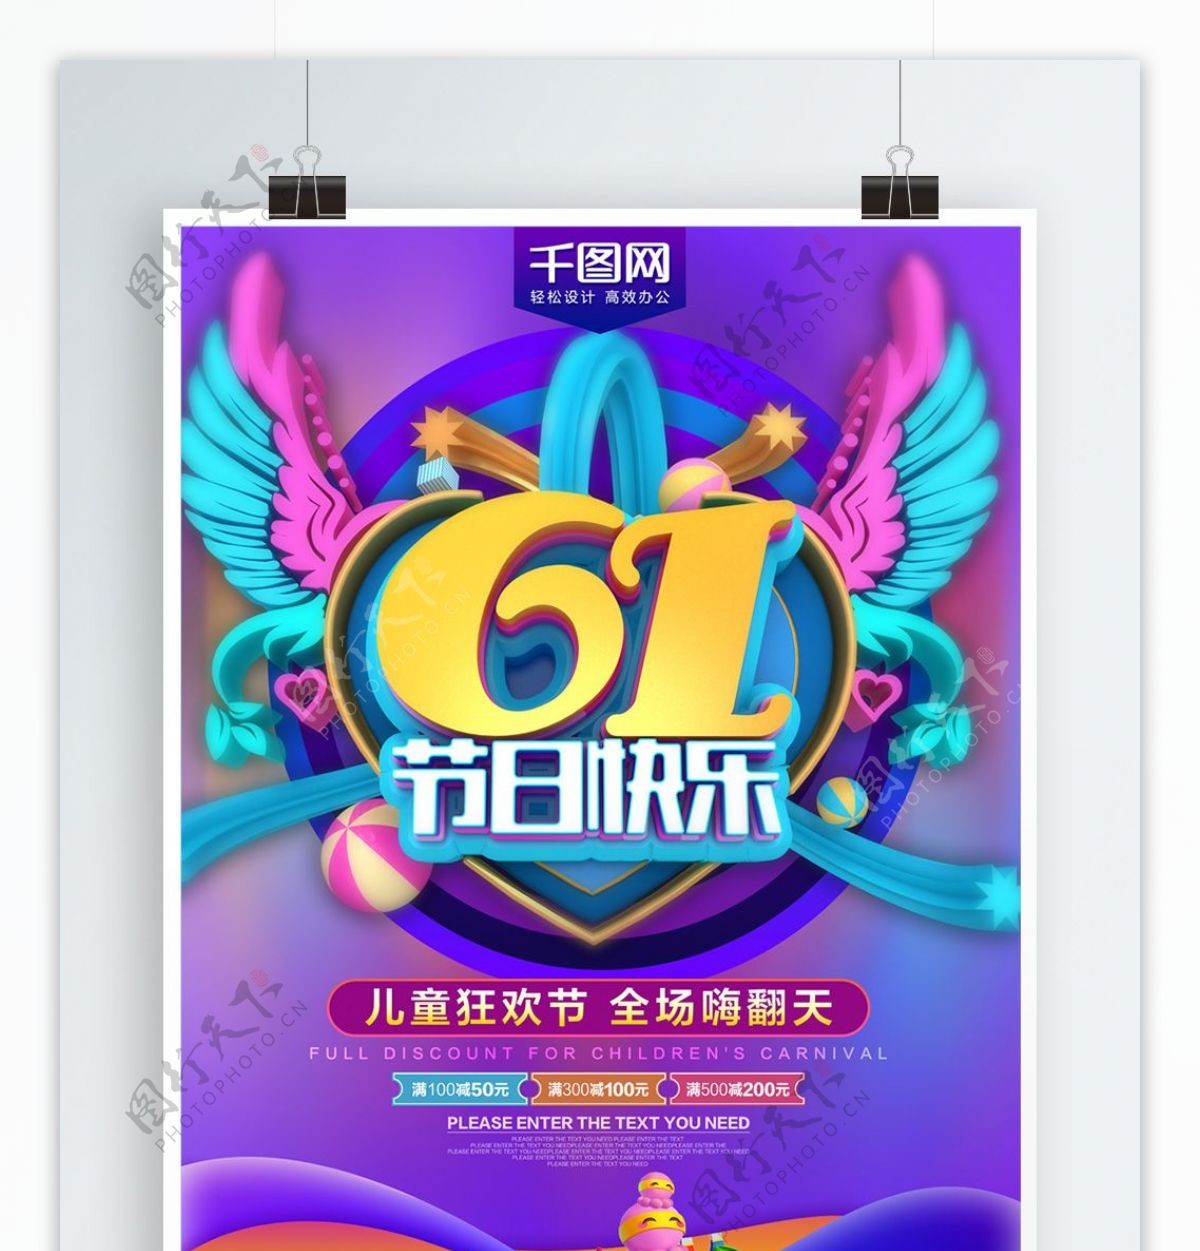 61儿童节快乐C4D炫彩卡通海报